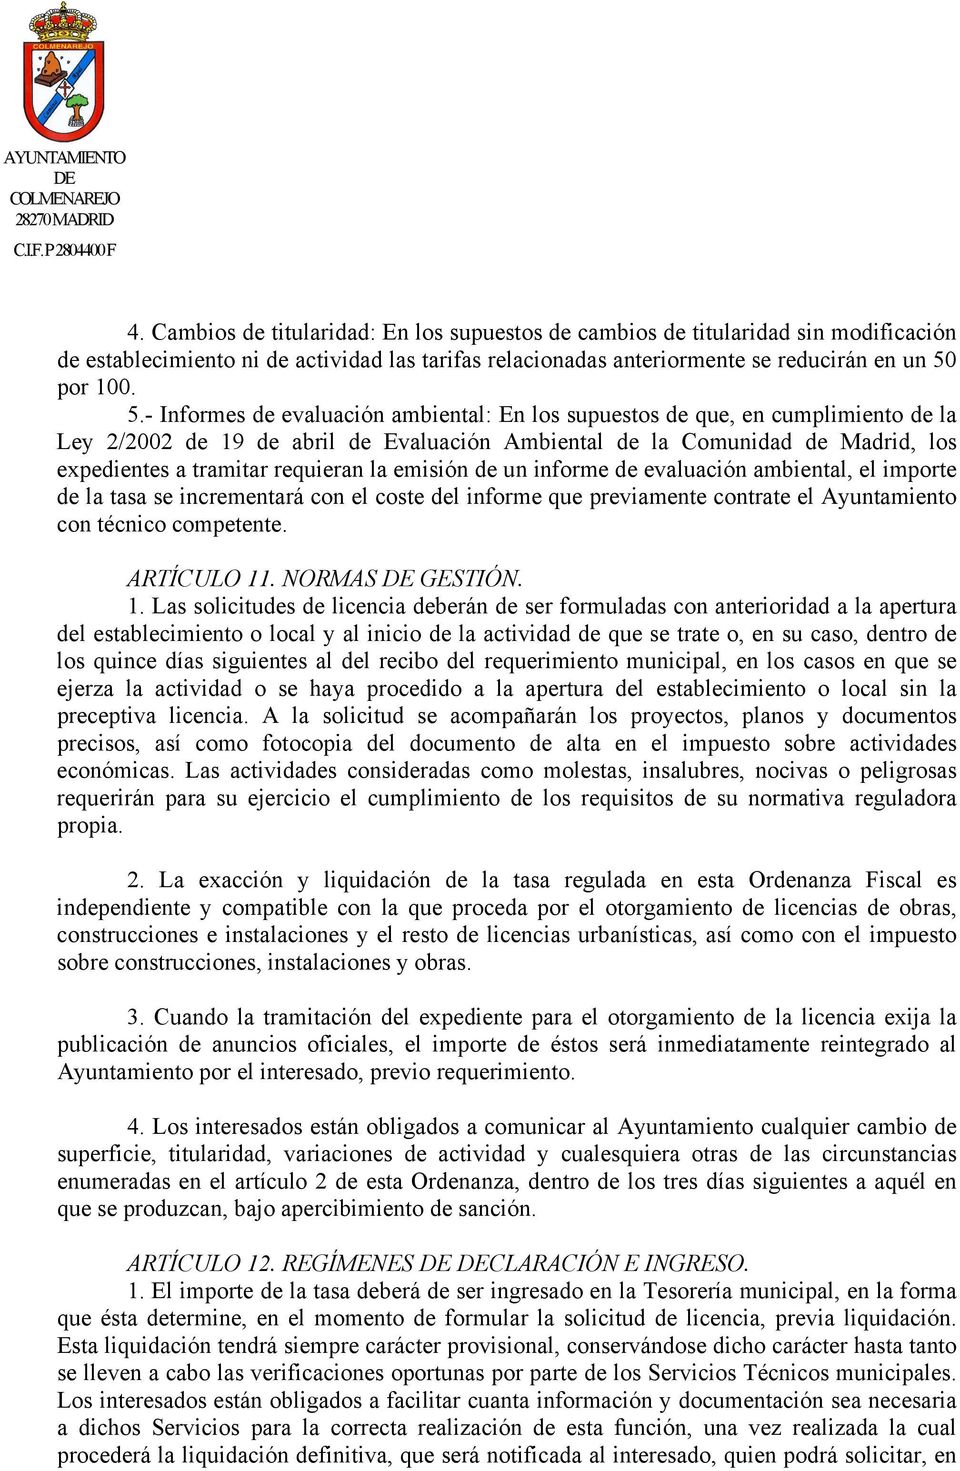 - Informes de evaluación ambiental: En los supuestos de que, en cumplimiento de la Ley 2/2002 de 19 de abril de Evaluación Ambiental de la Comunidad de Madrid, los expedientes a tramitar requieran la